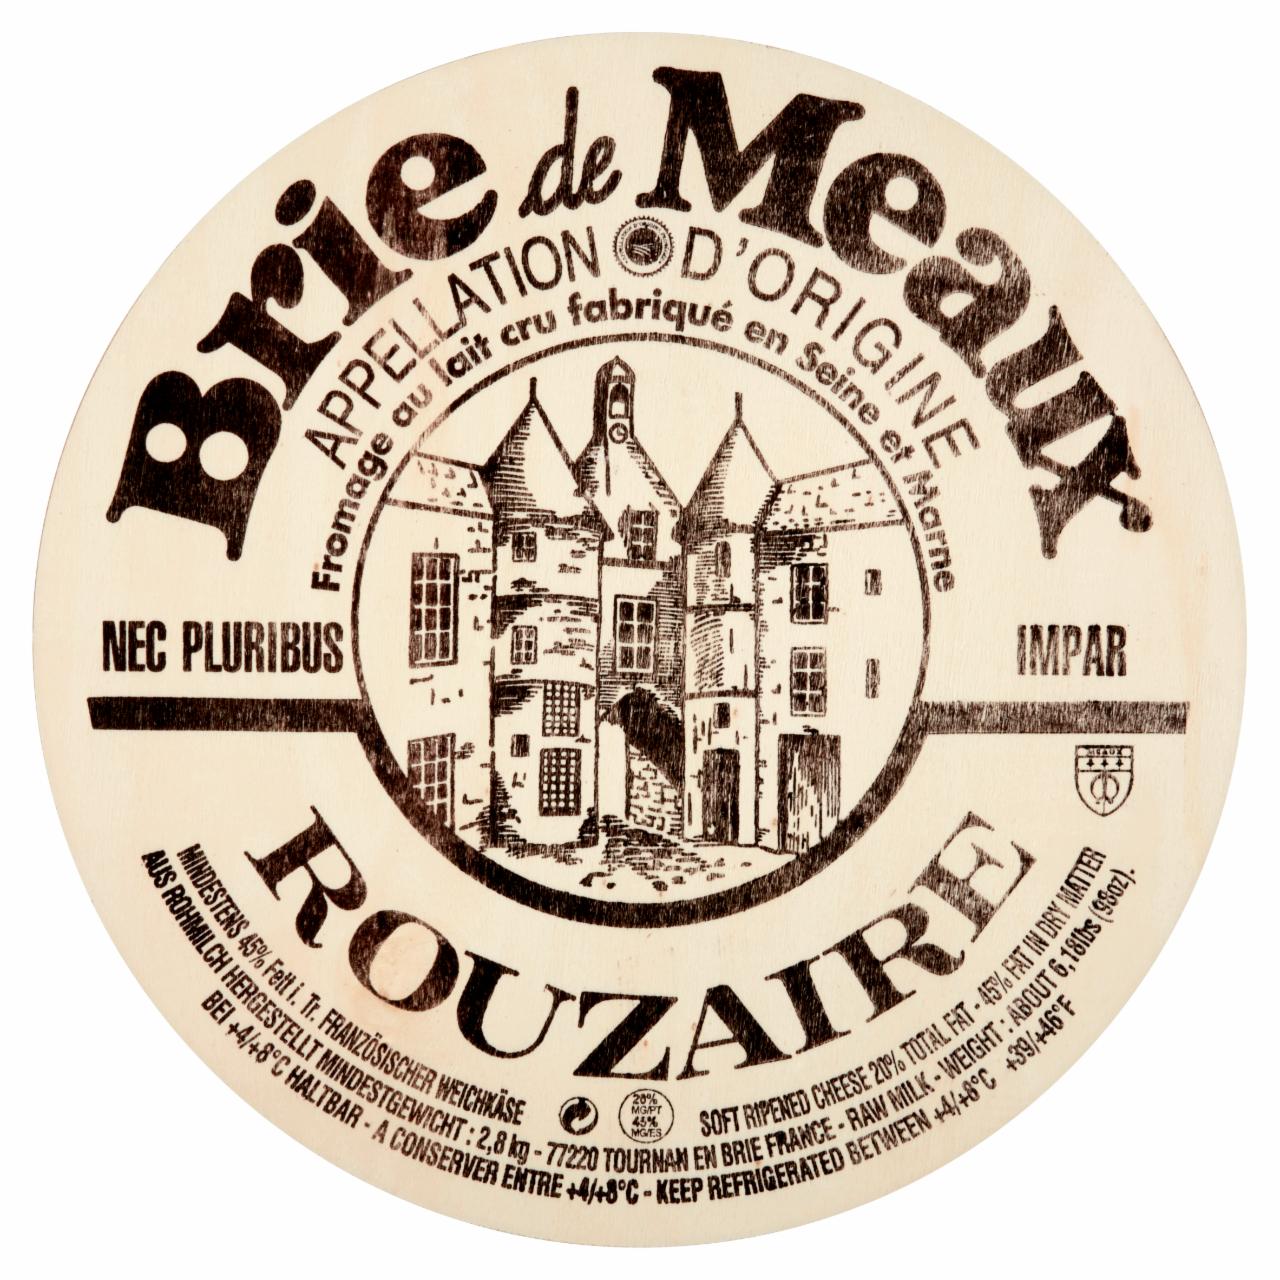 Képek - Brie de Meaux zsíros, fehér nemespenésszel érő lágy sajt